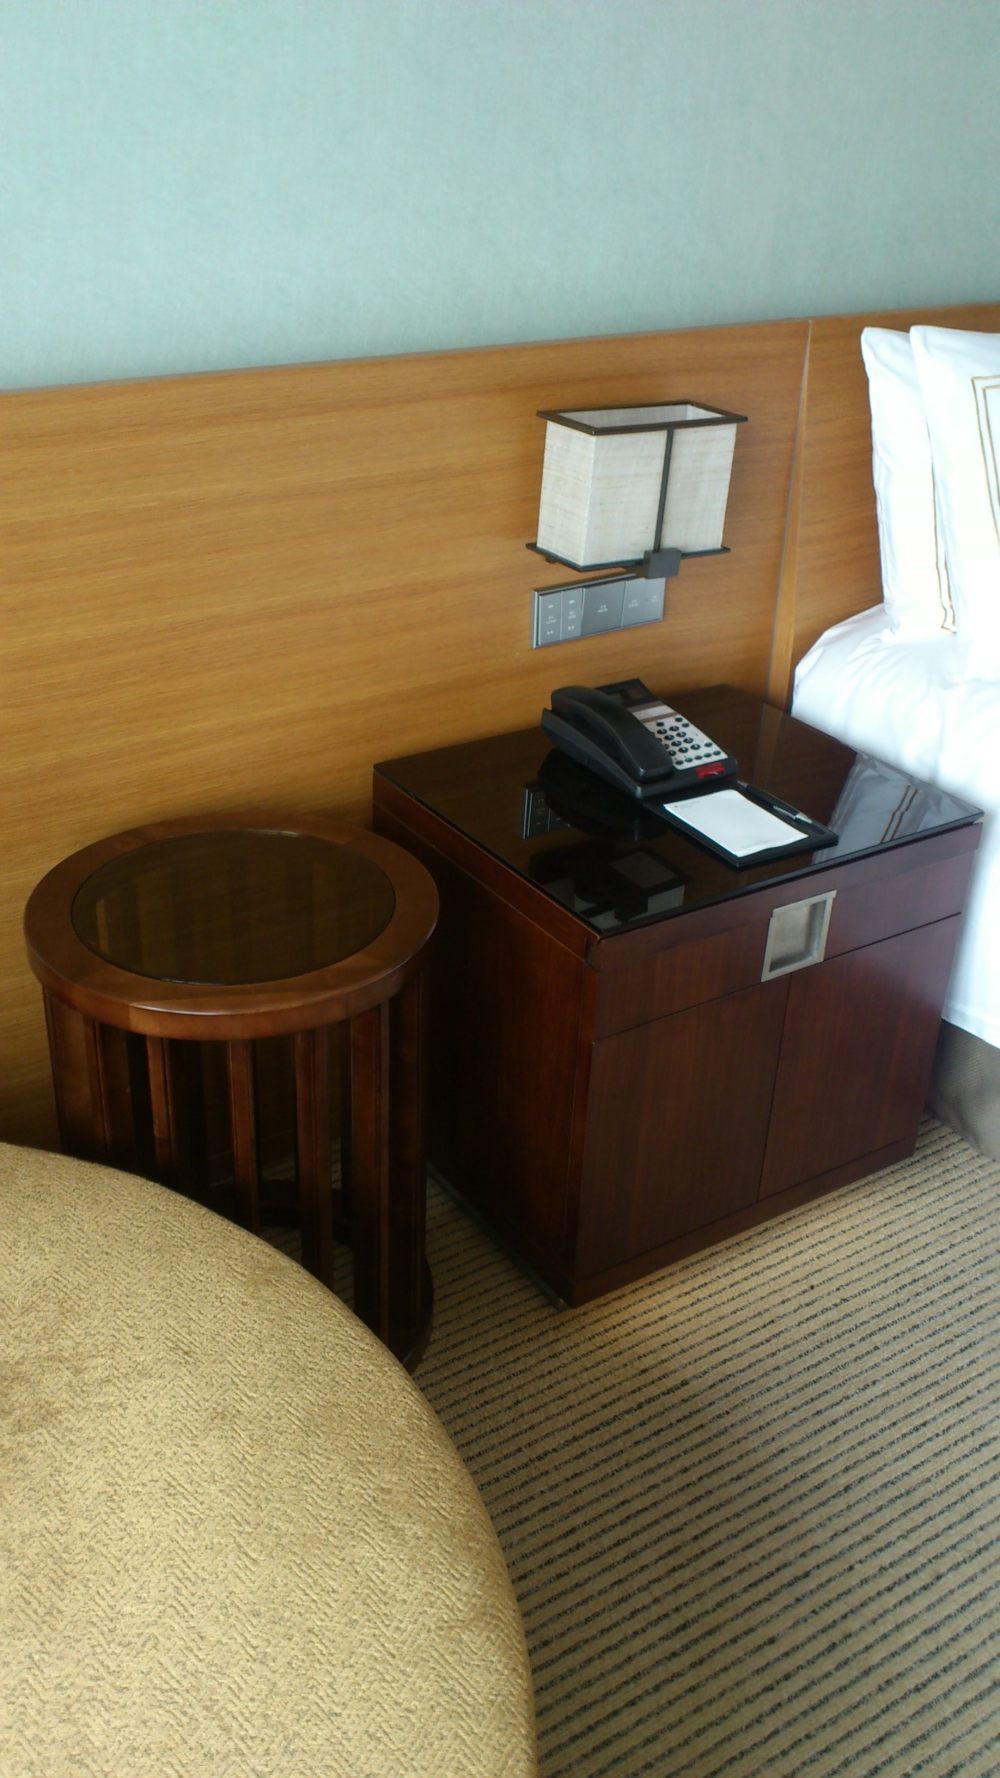 苏州晋合洲际Intercontinental酒店--2012.06.24第八页更新客房_DSC_1310.JPG